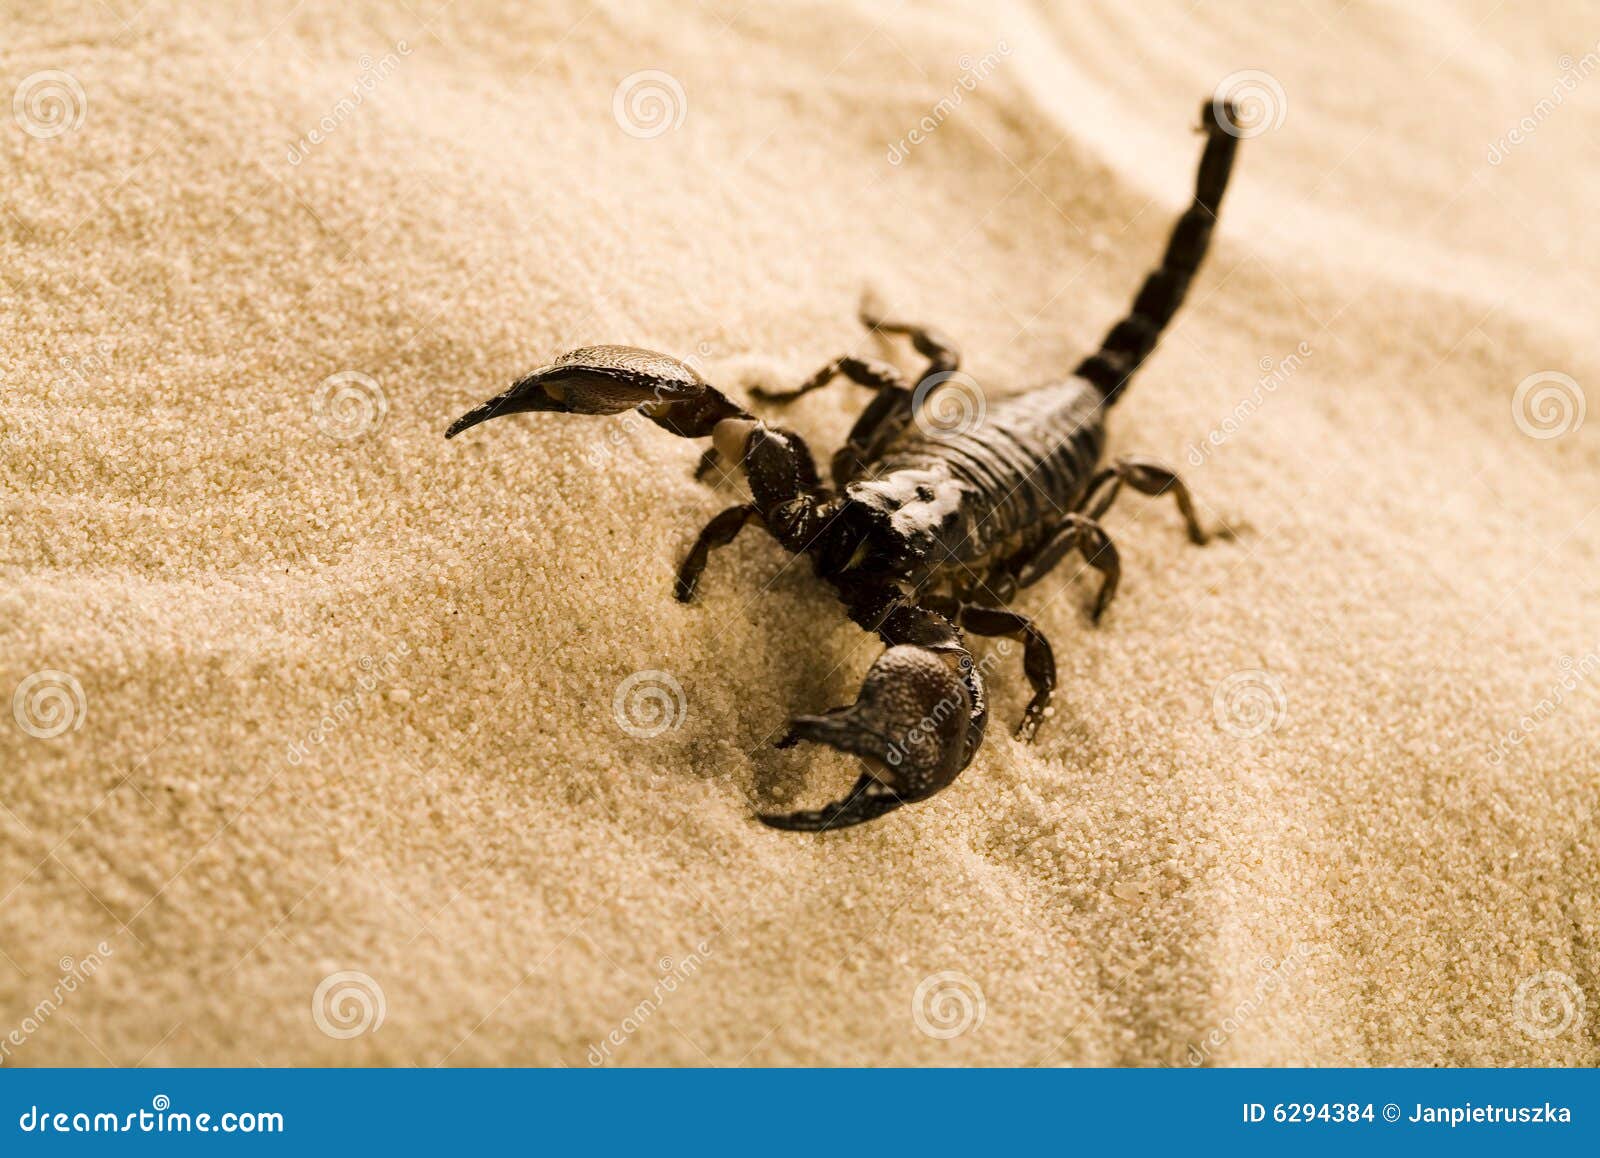 黄色蝎子在沙漠，大弯曲国家公园，得克萨斯，美国 库存照片. 图片 包括有 可弯的, 节肢动物, 沙漠, 昆虫 - 115254096